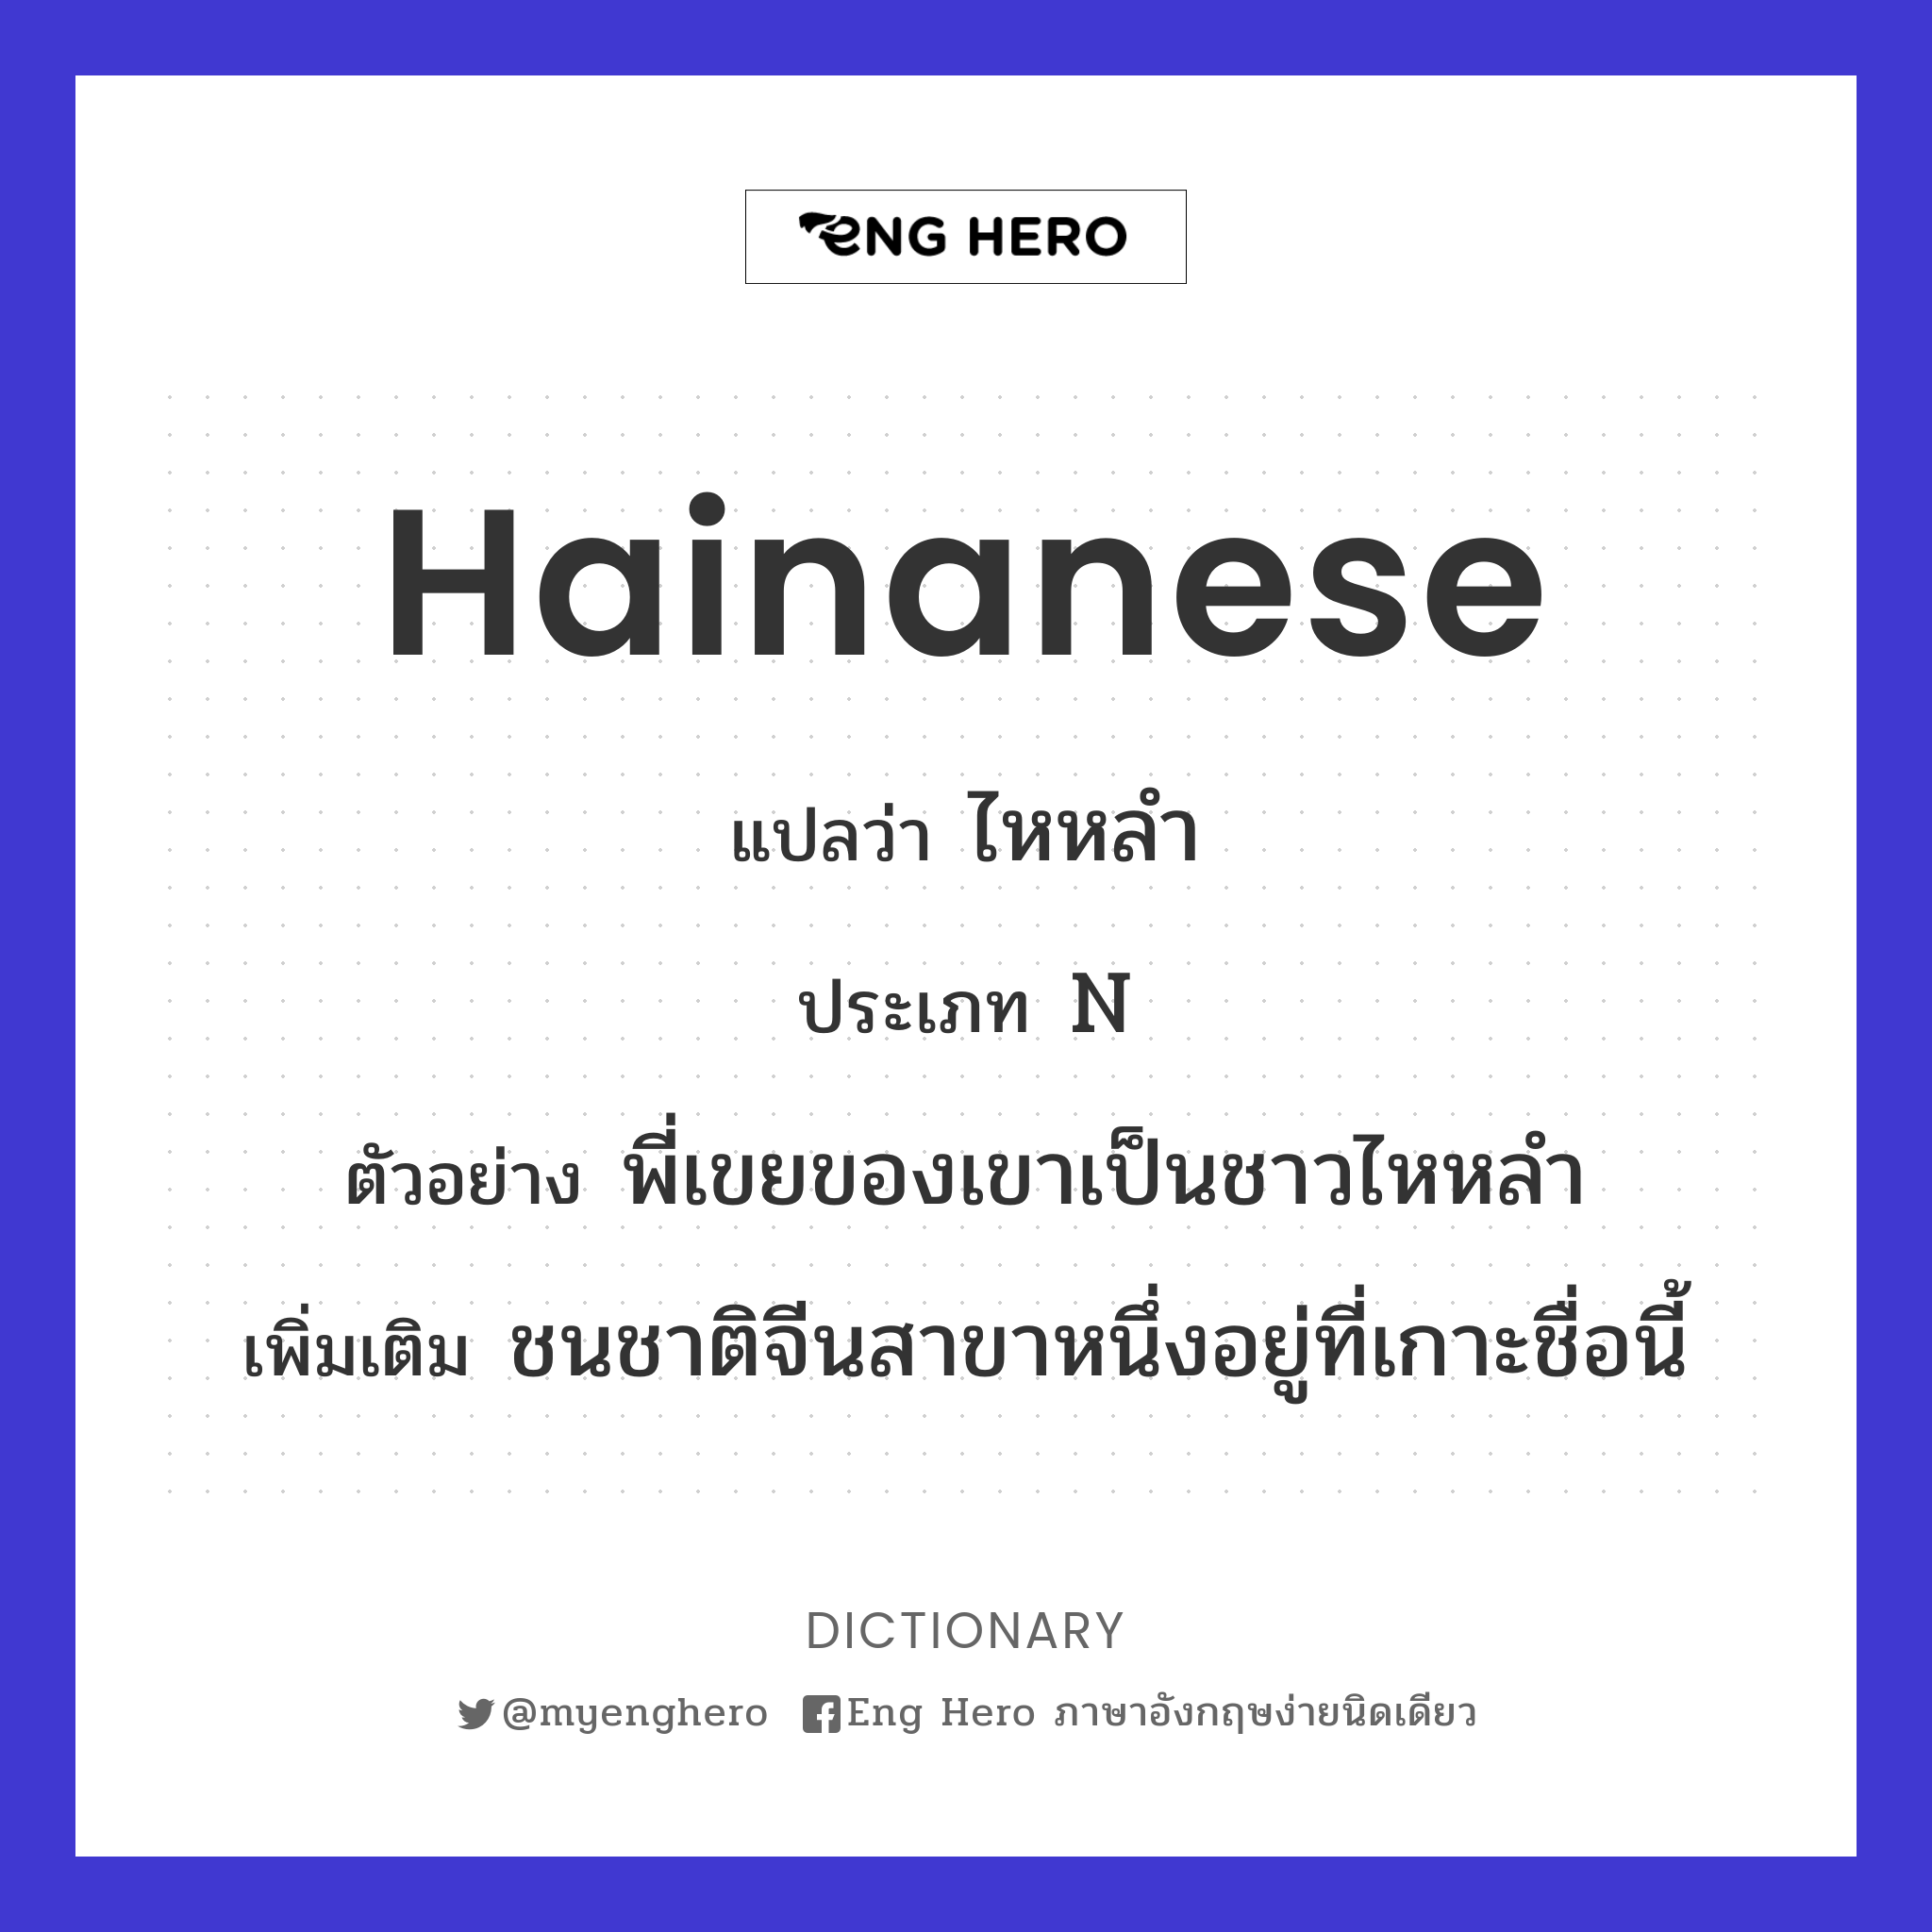 Hainanese